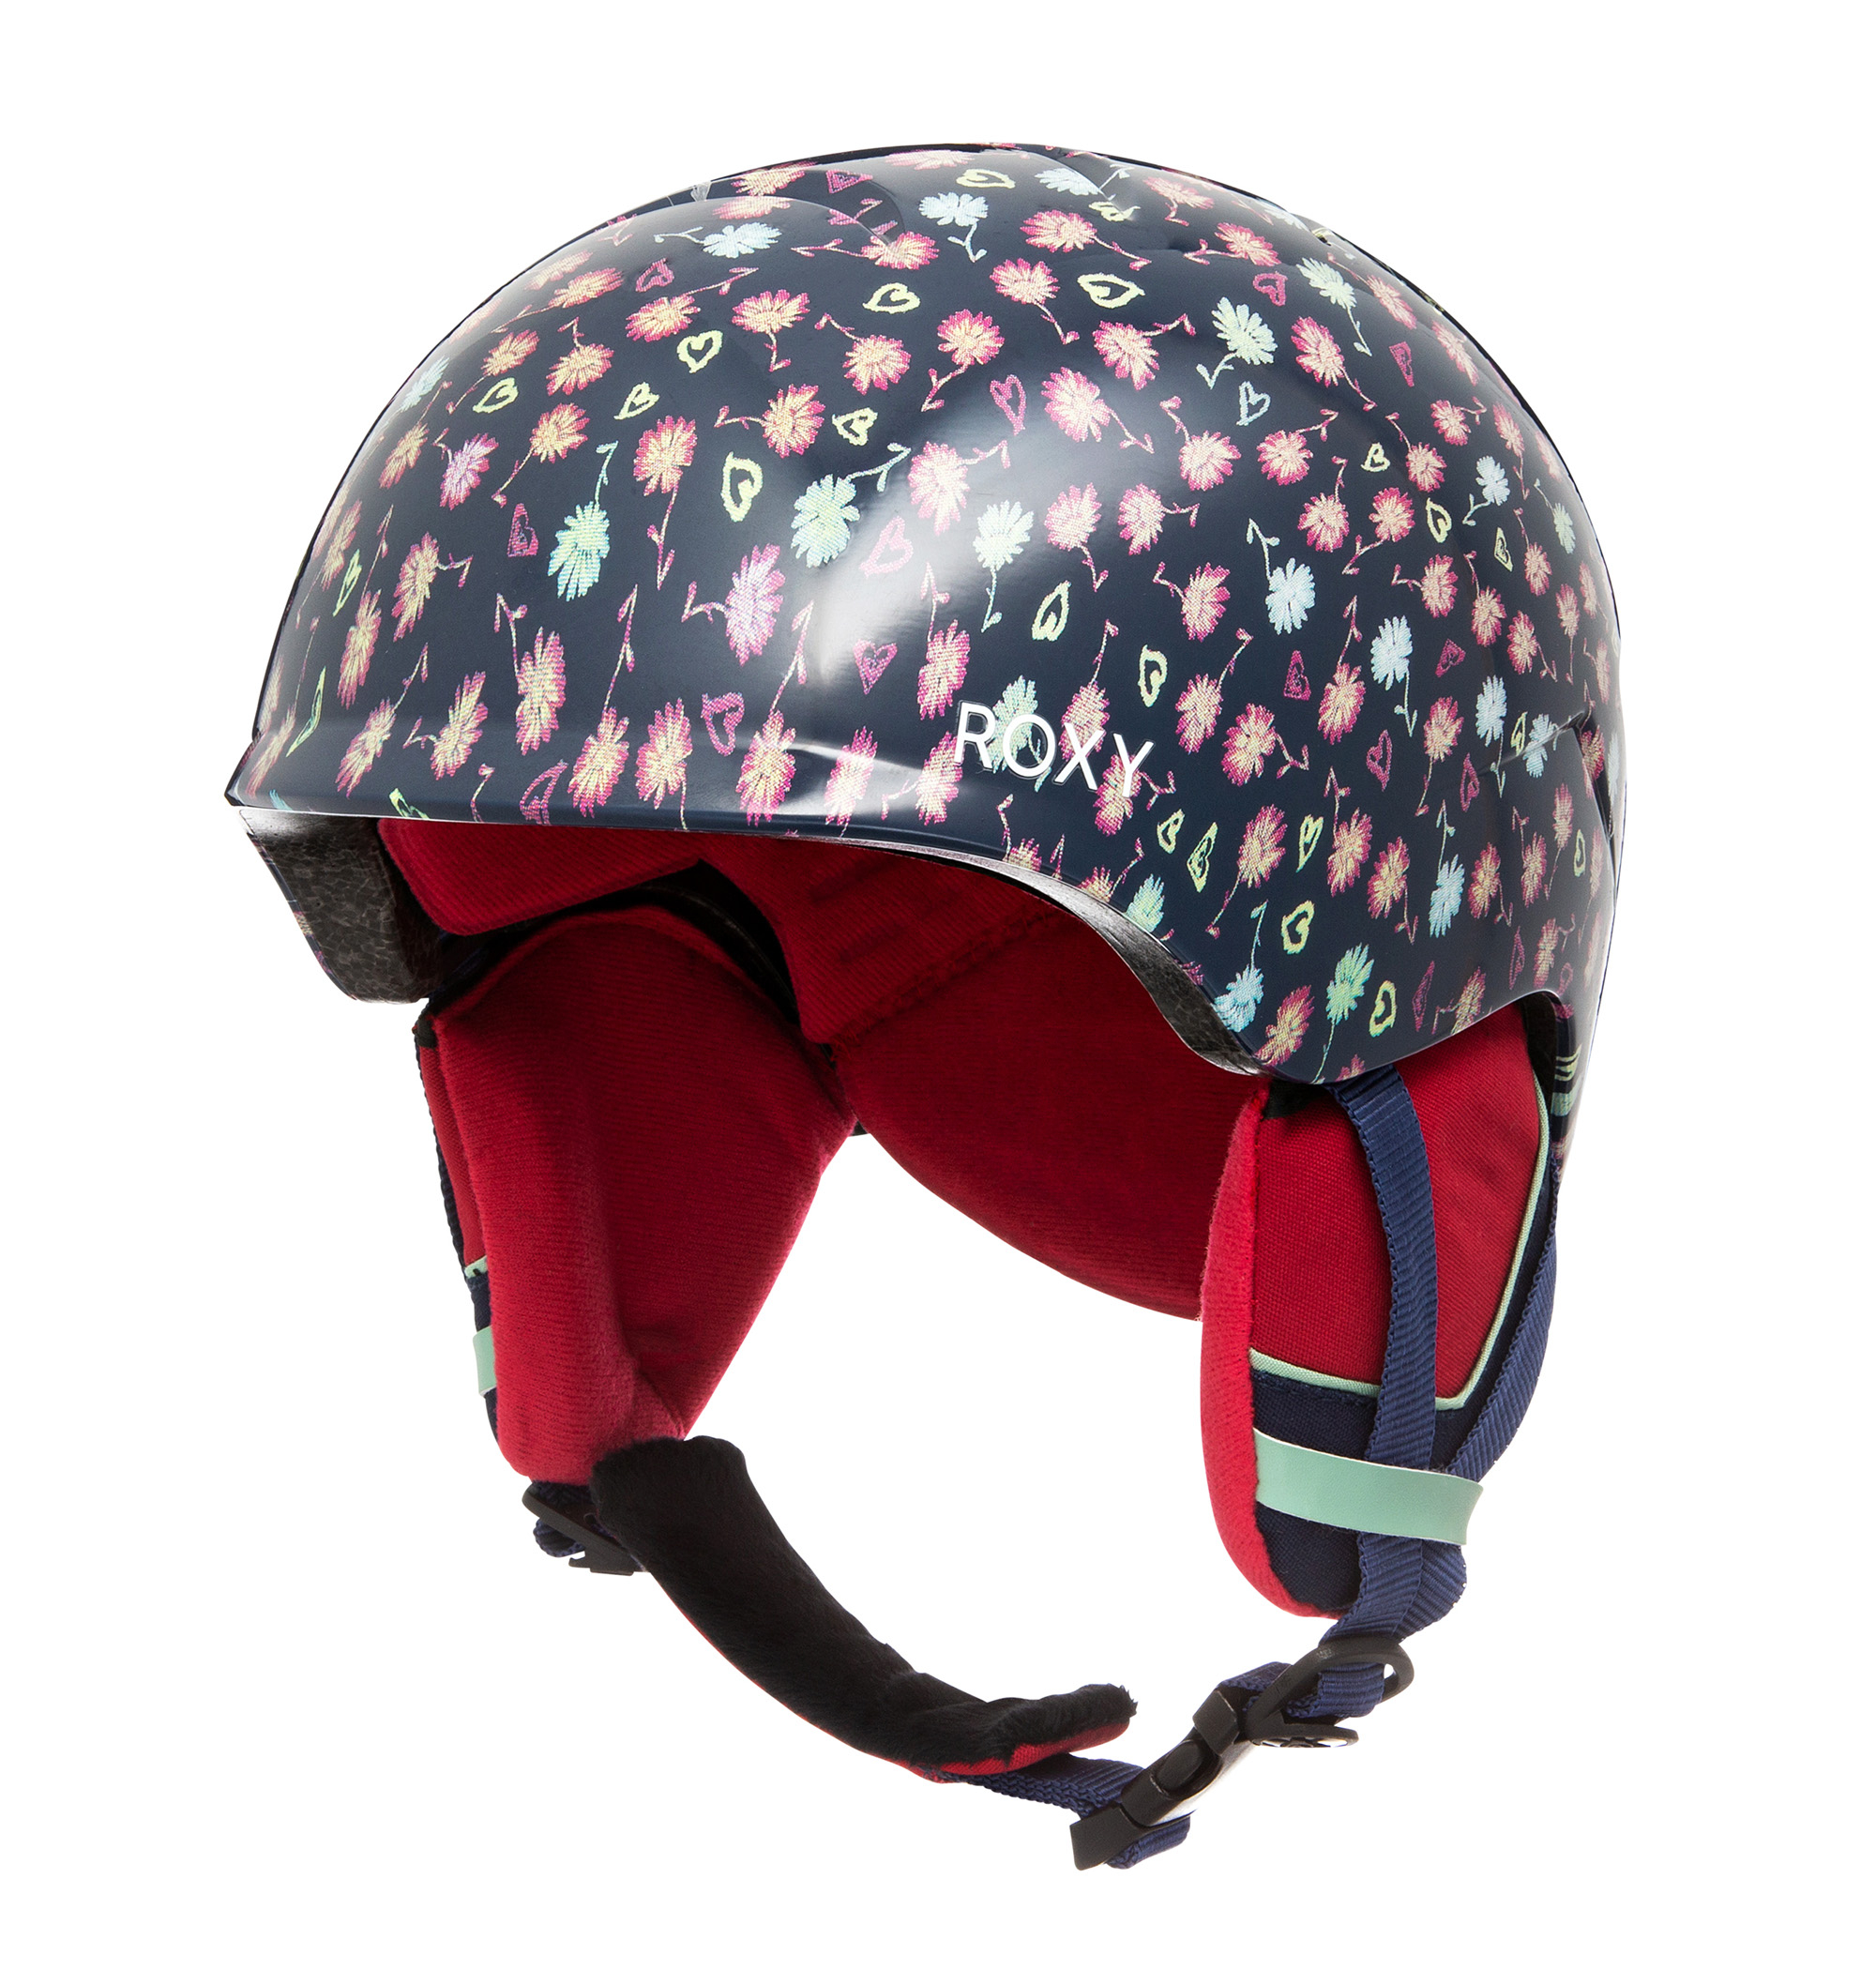 30%OFF！＜Roxy＞SLUSH GIRL 長時間の着用でも疲れにくい軽量インモールド構造のヘルメット